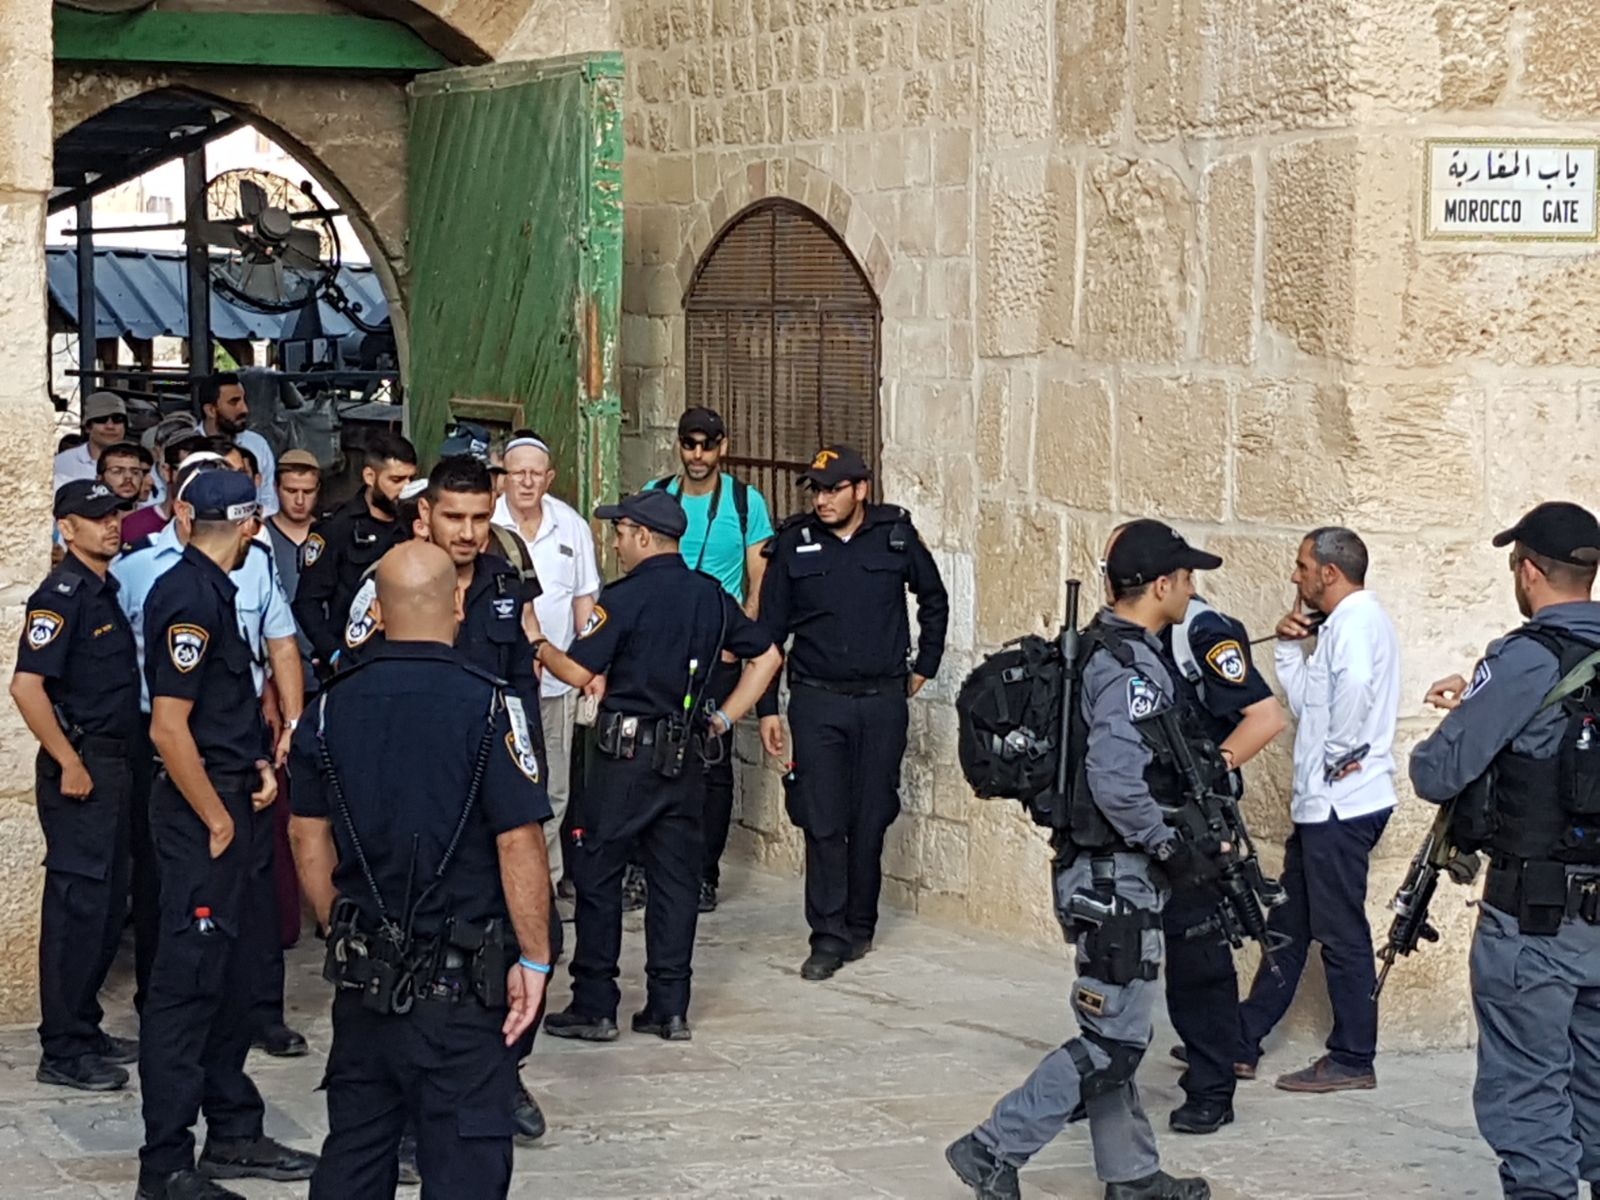 عشرات المستوطنين يقتحمون باحات المسجد الأقصى